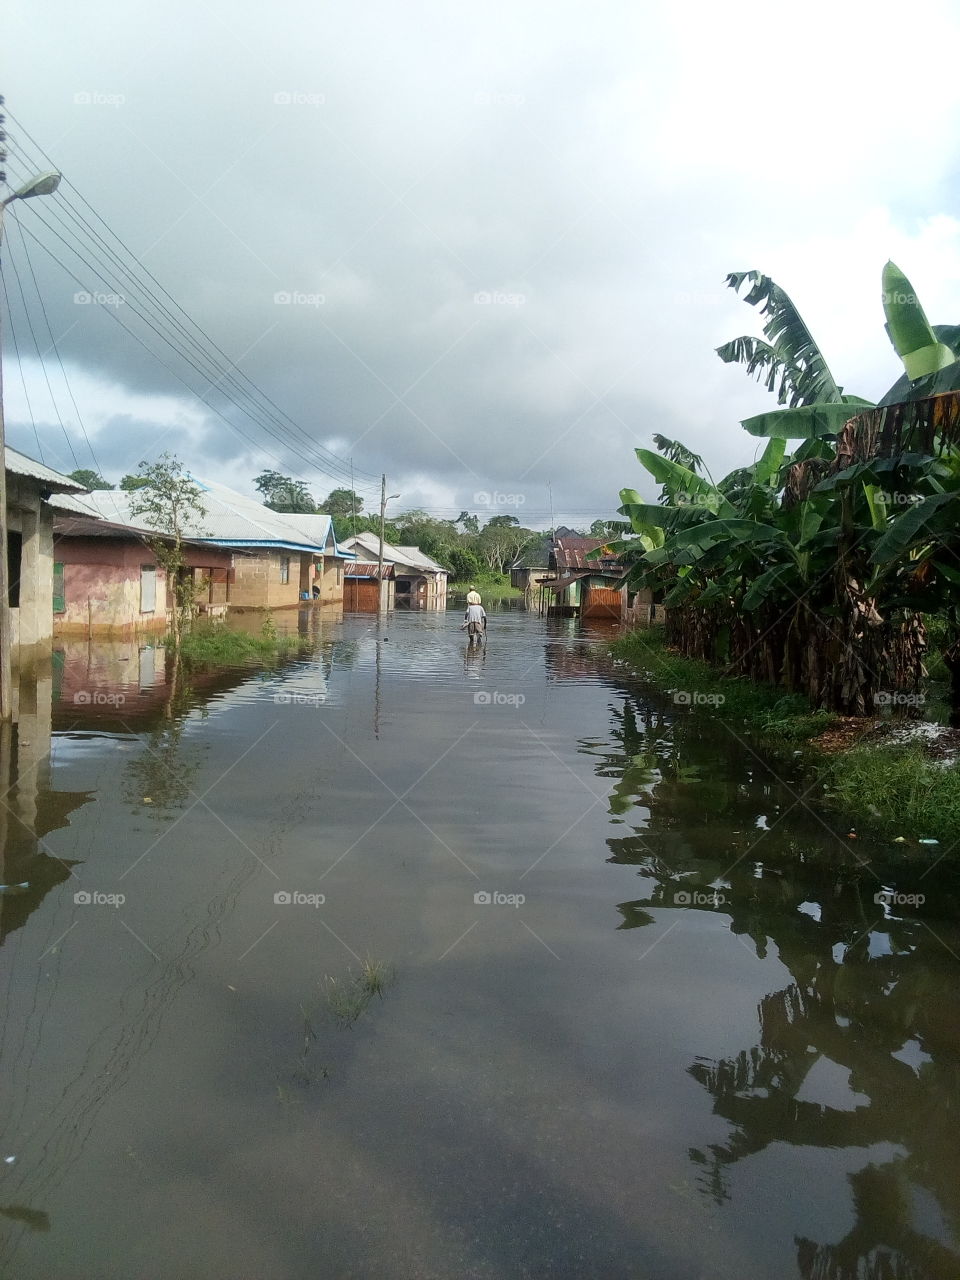 Akinima, Nigeria flood. 2019